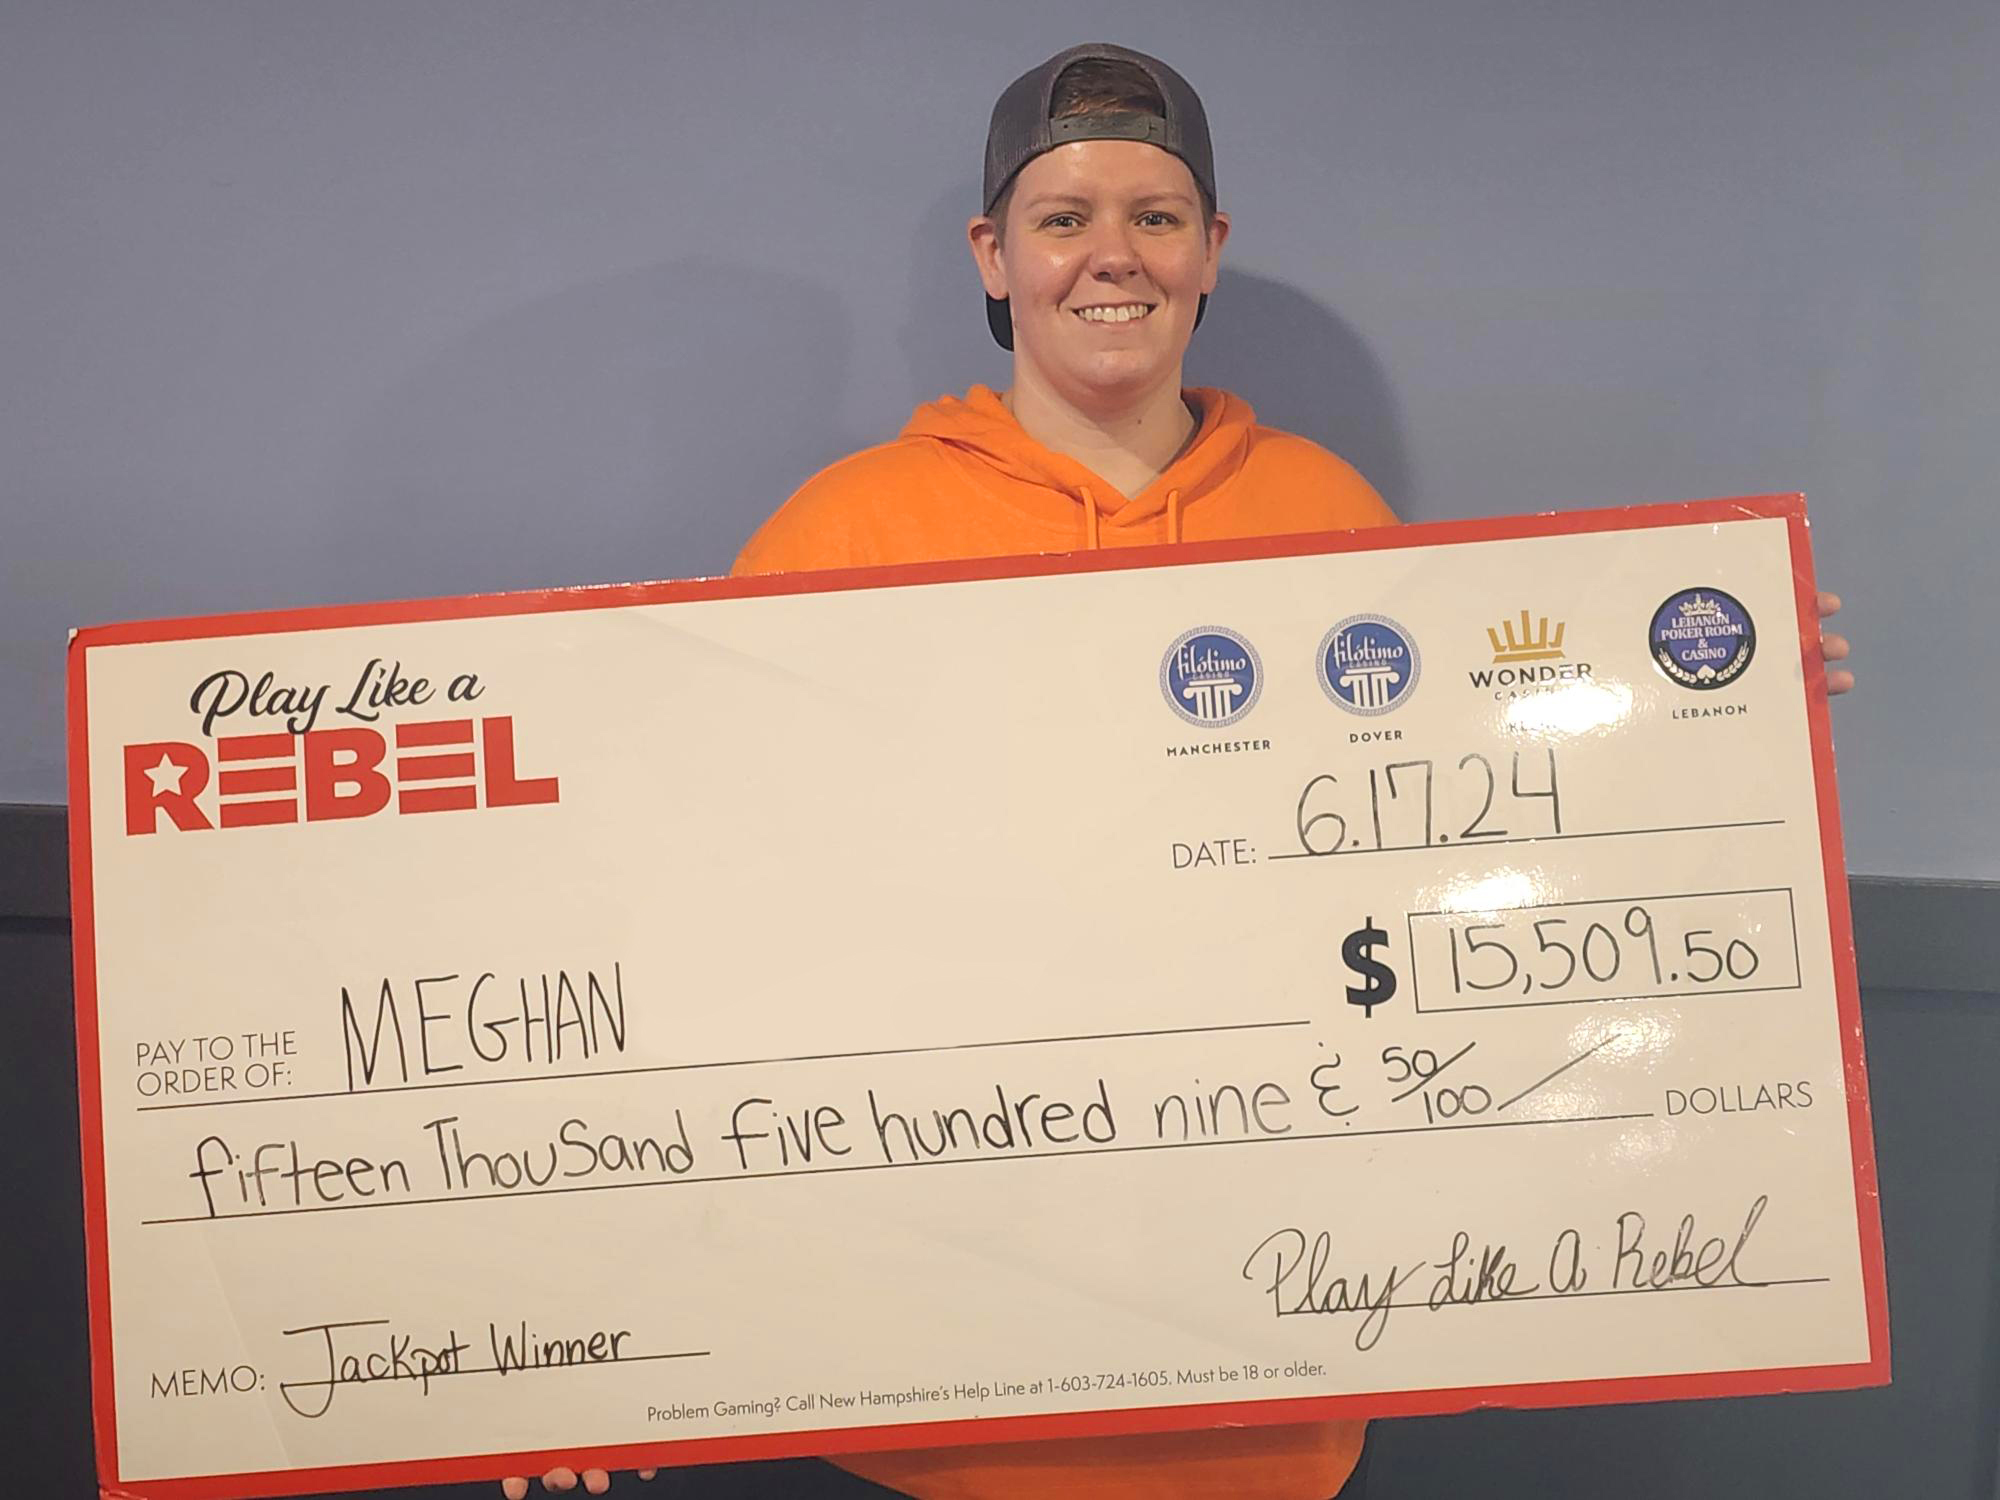 Megan $15,000